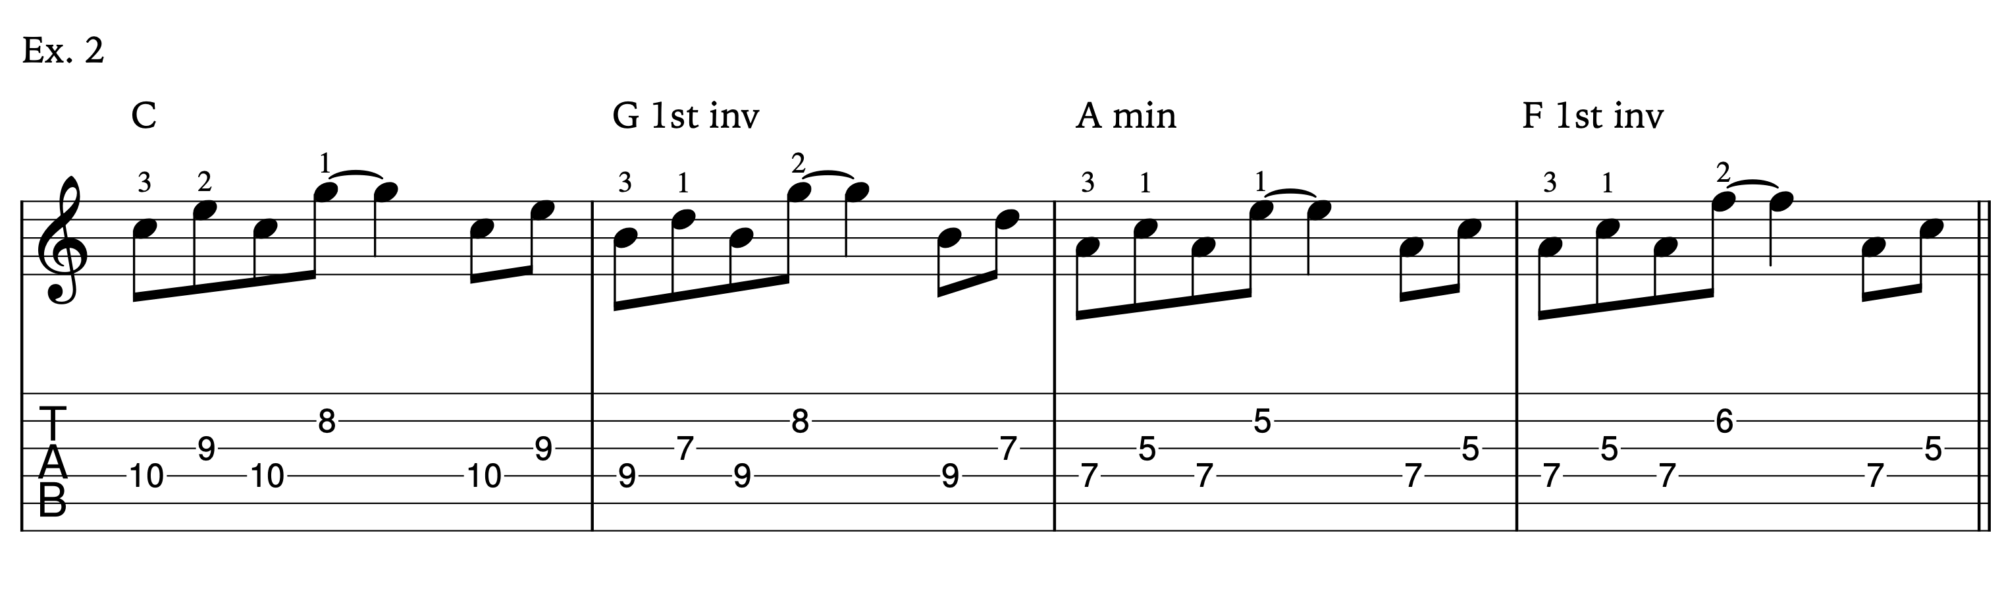 triad chords in a progression example 2